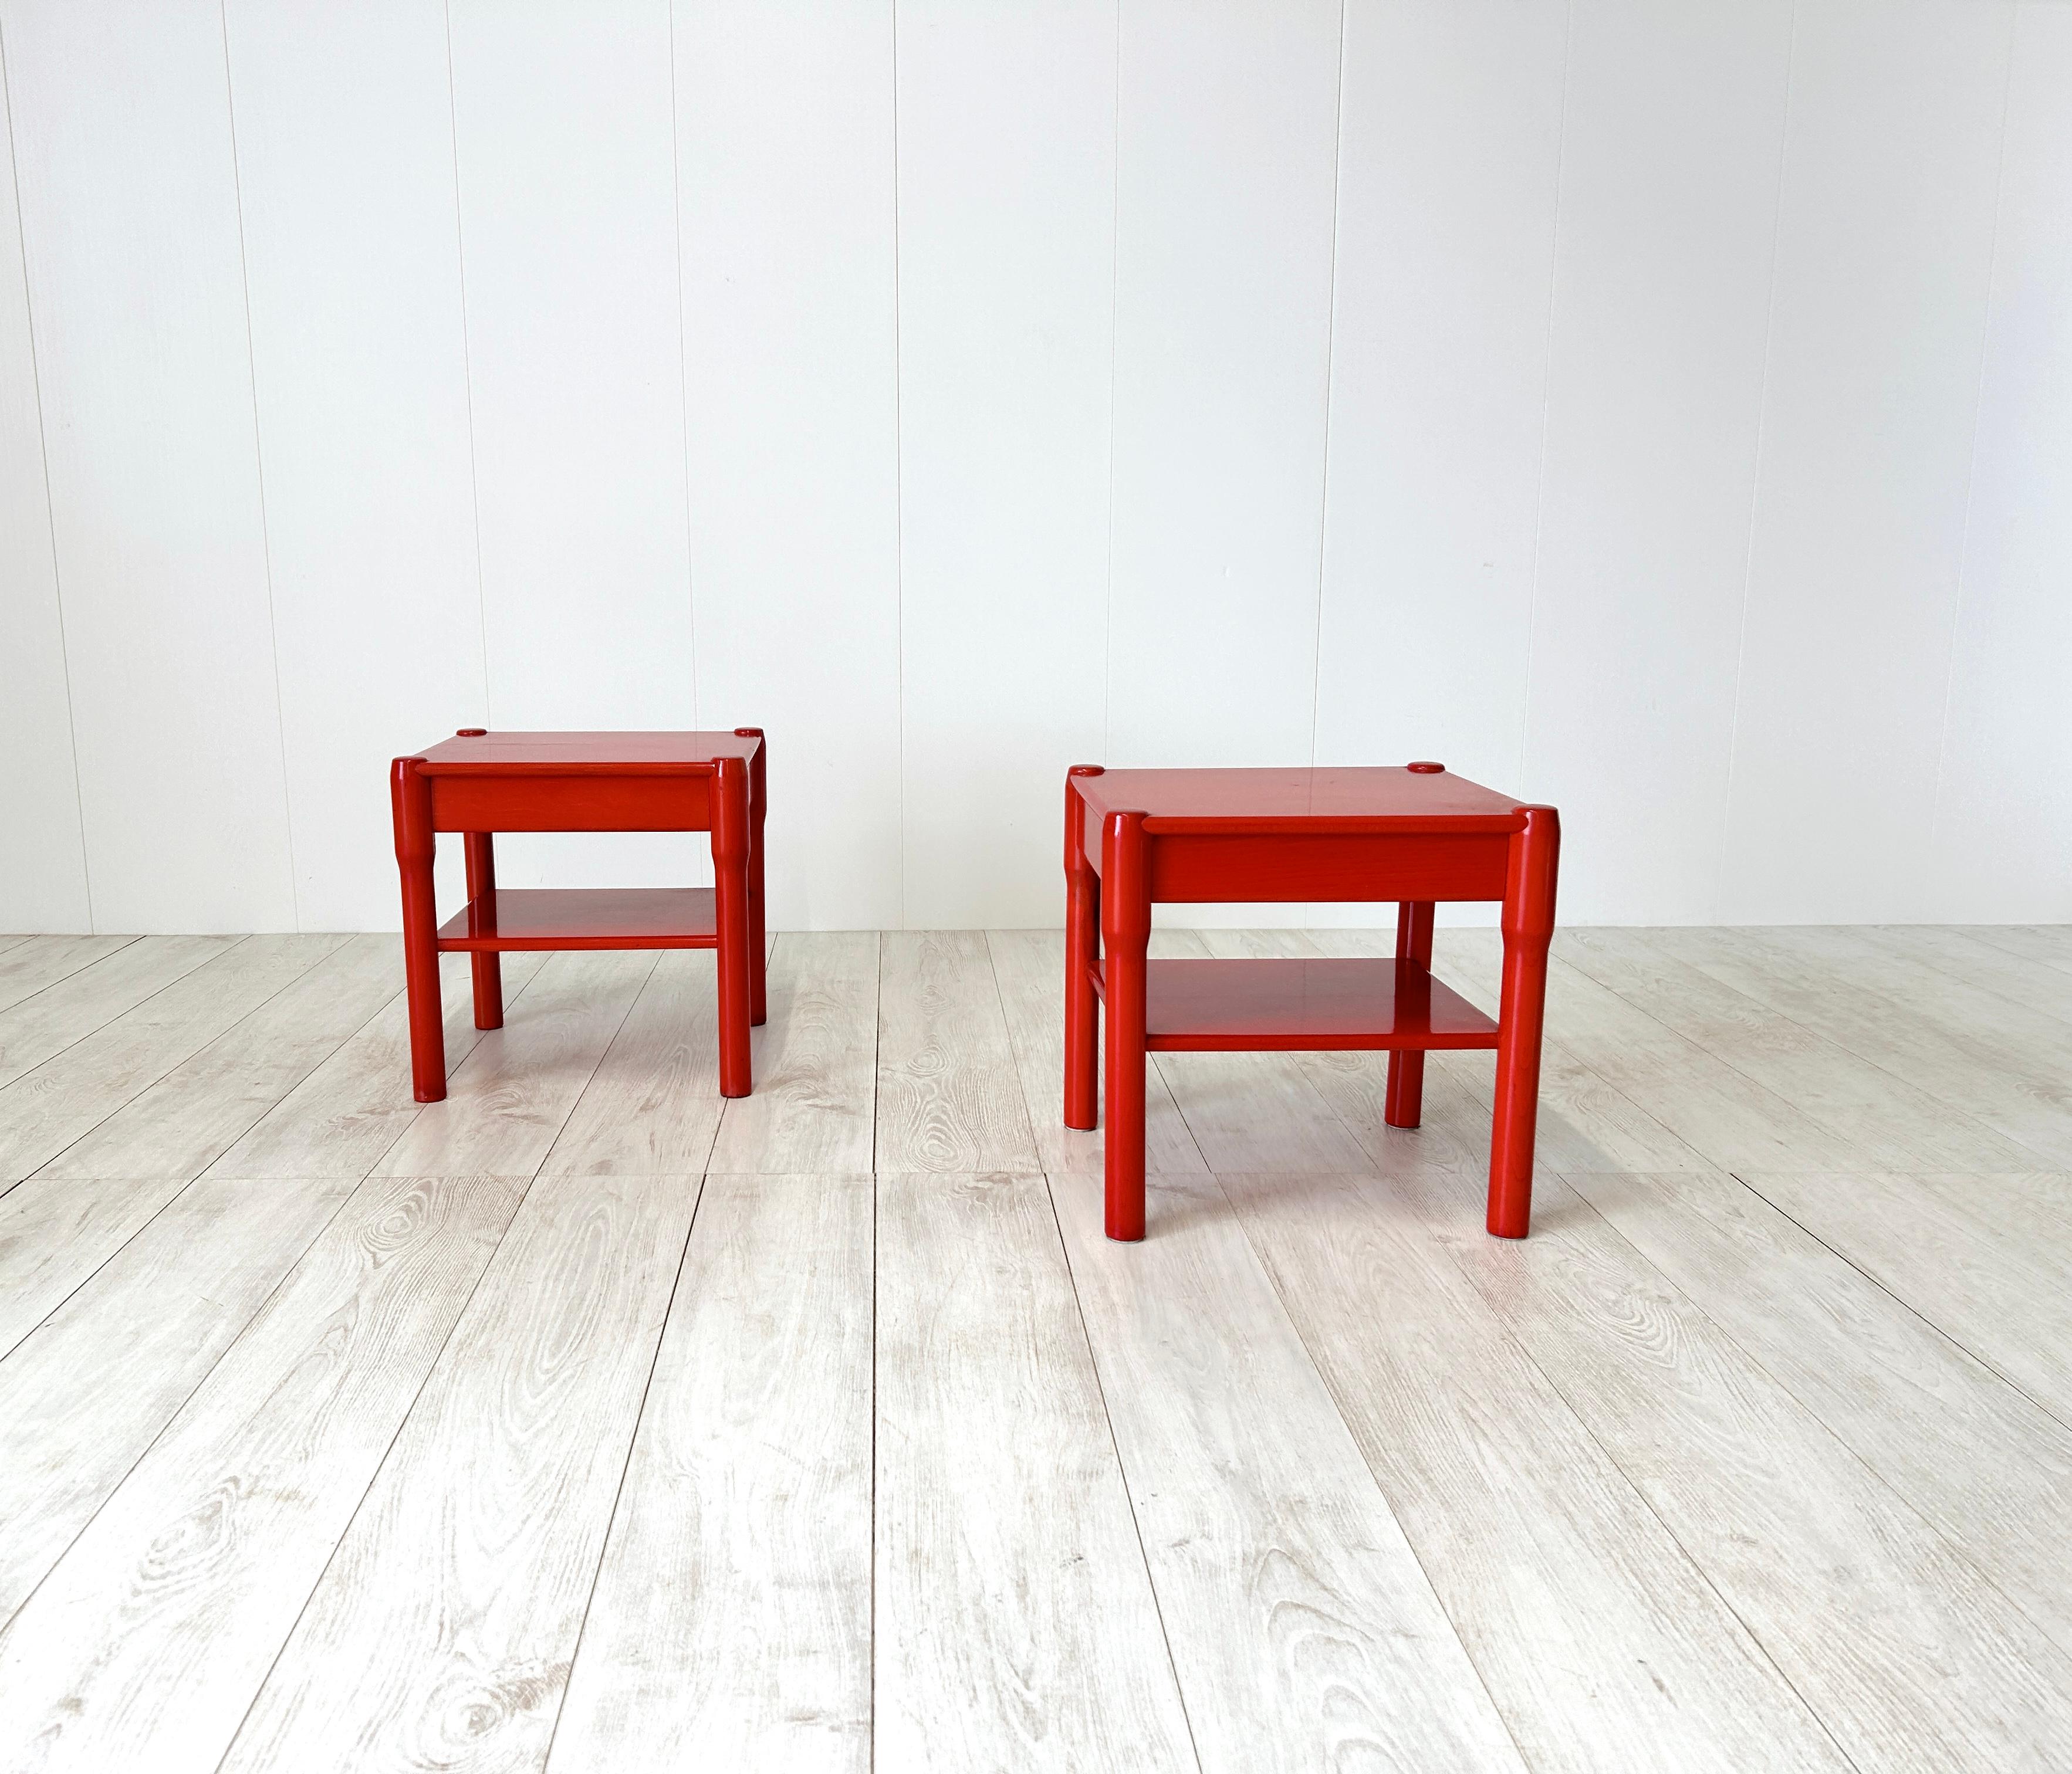 Rara coppia di comodini serie Carimate, Vico Magistretti, anni '60 
Struttura in legno tinto di rosso

Abbinabili alla cassettiera della stessa serie

